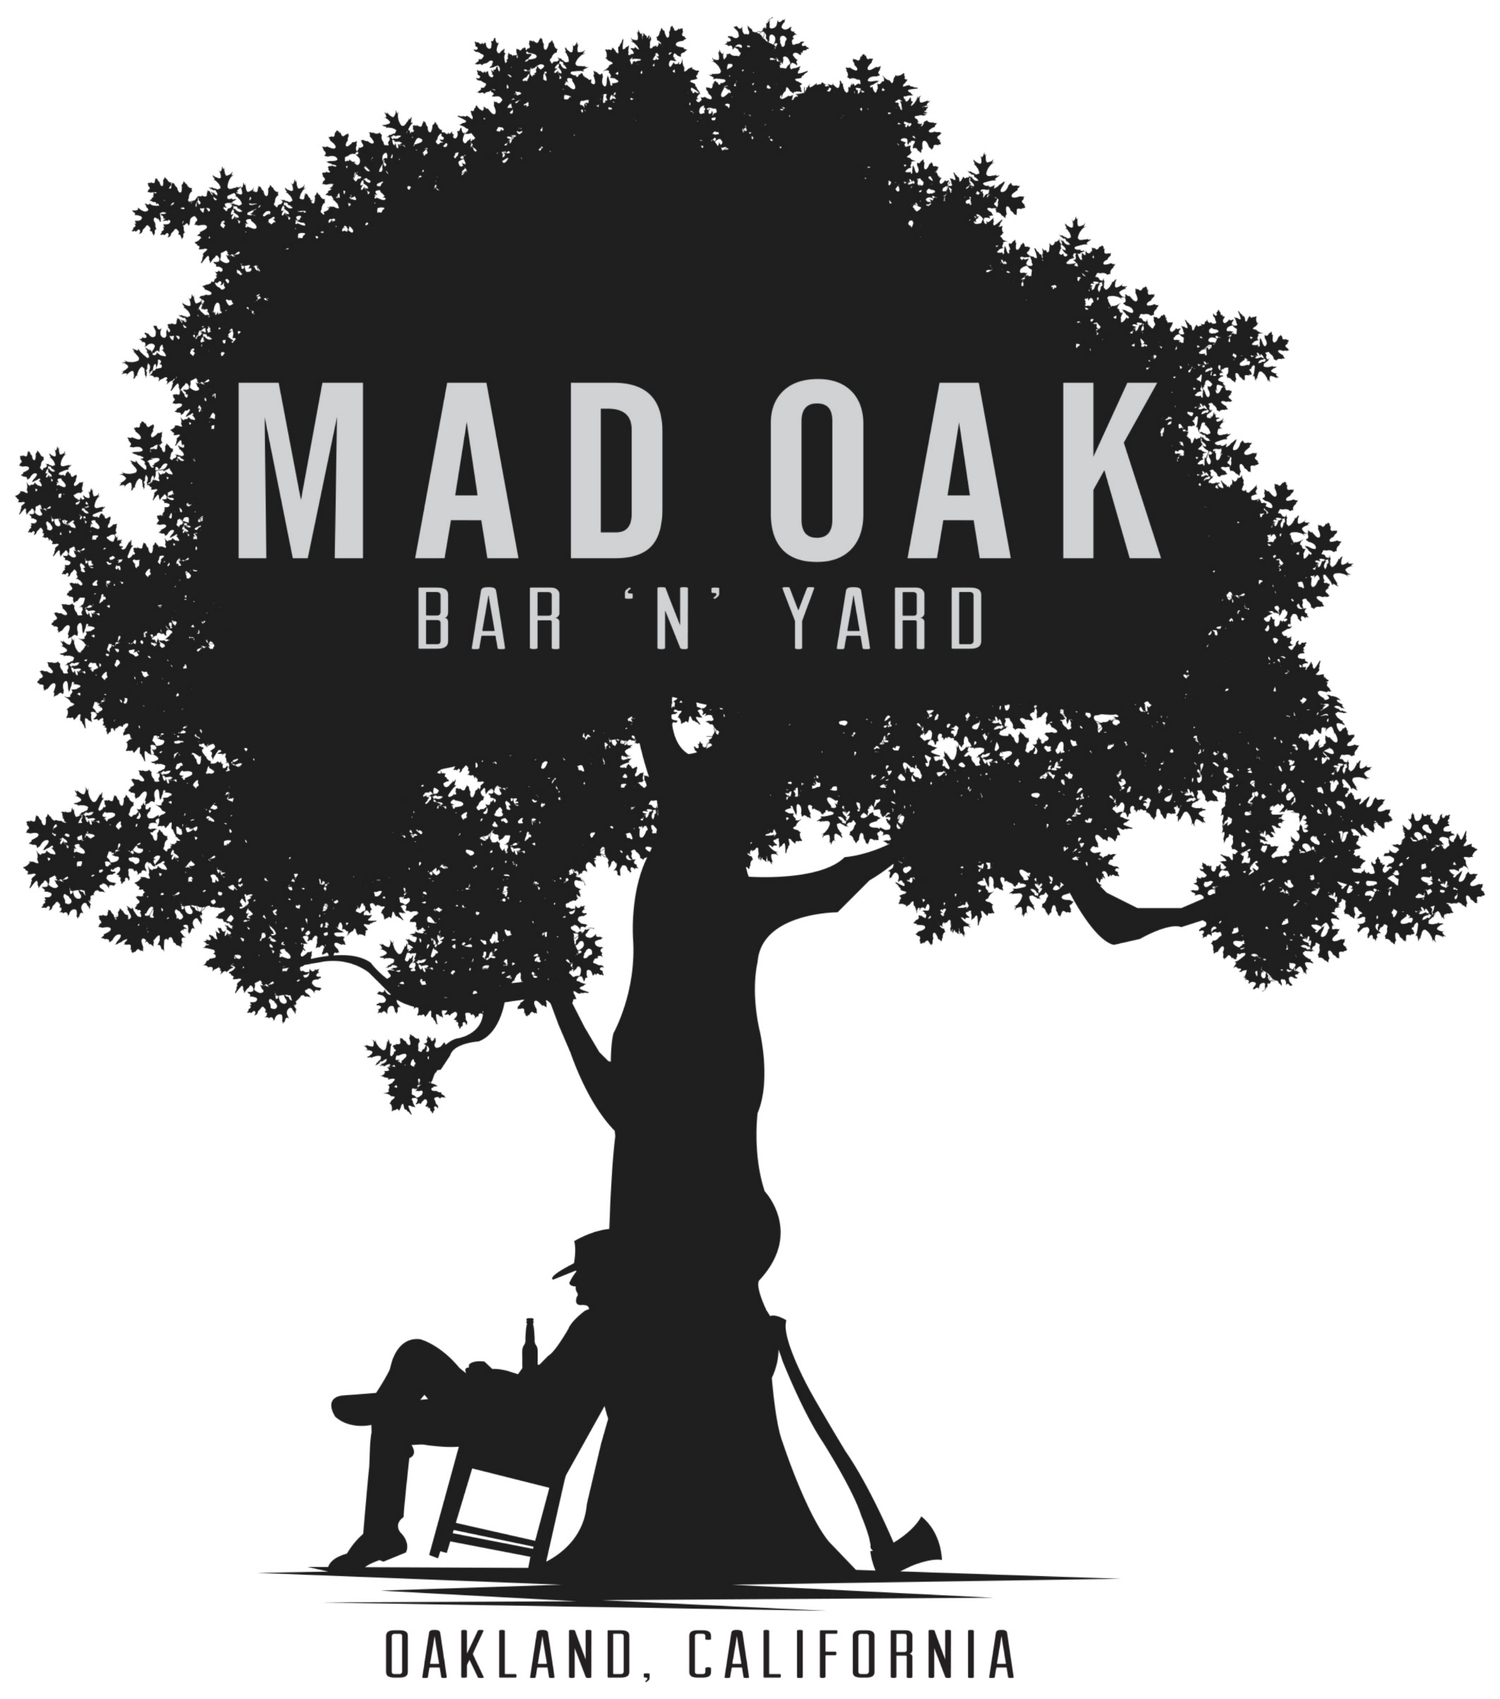 Mad Oak Bar 'n' Yard